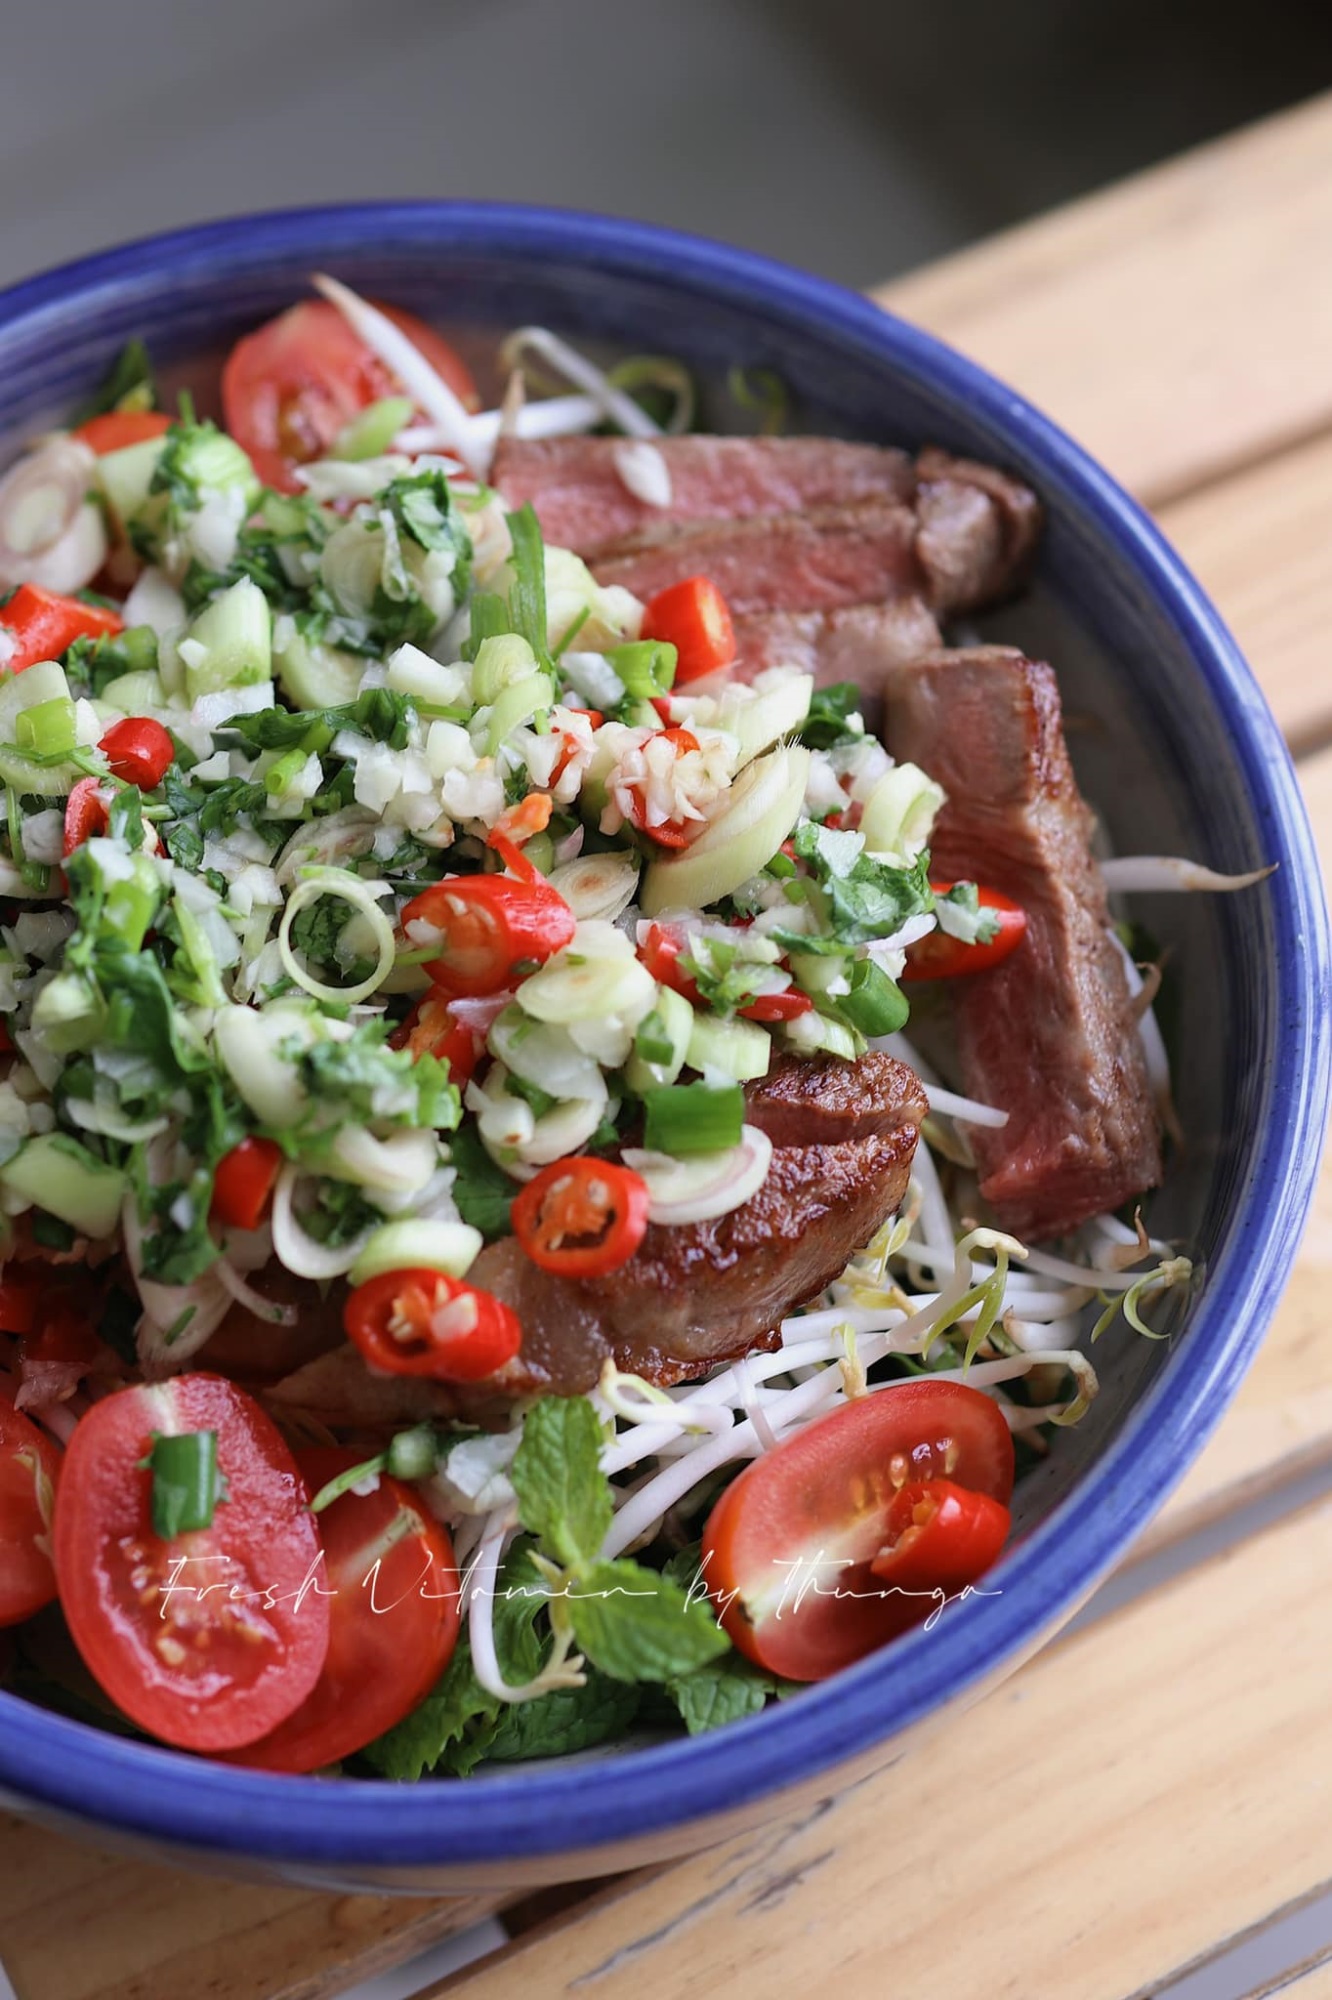 Trưa nay ăn gì: Salad bò xốt Thái chua chua - Bữa trưa thanh đạm, không nhiều calo!-1